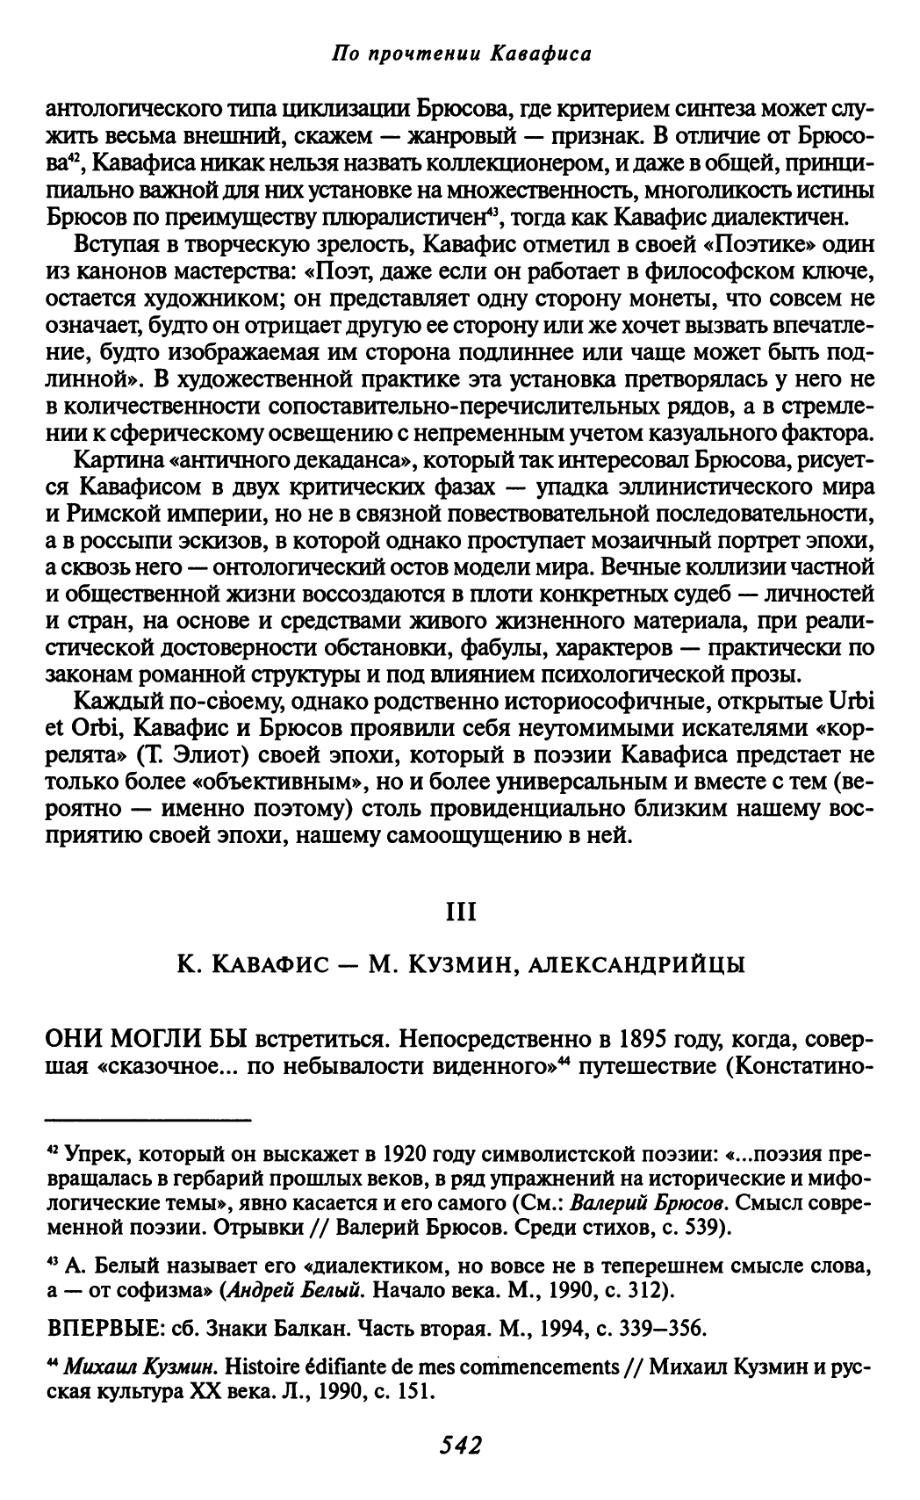 III. К. Кавафис — М. Кузмин, александрийцы